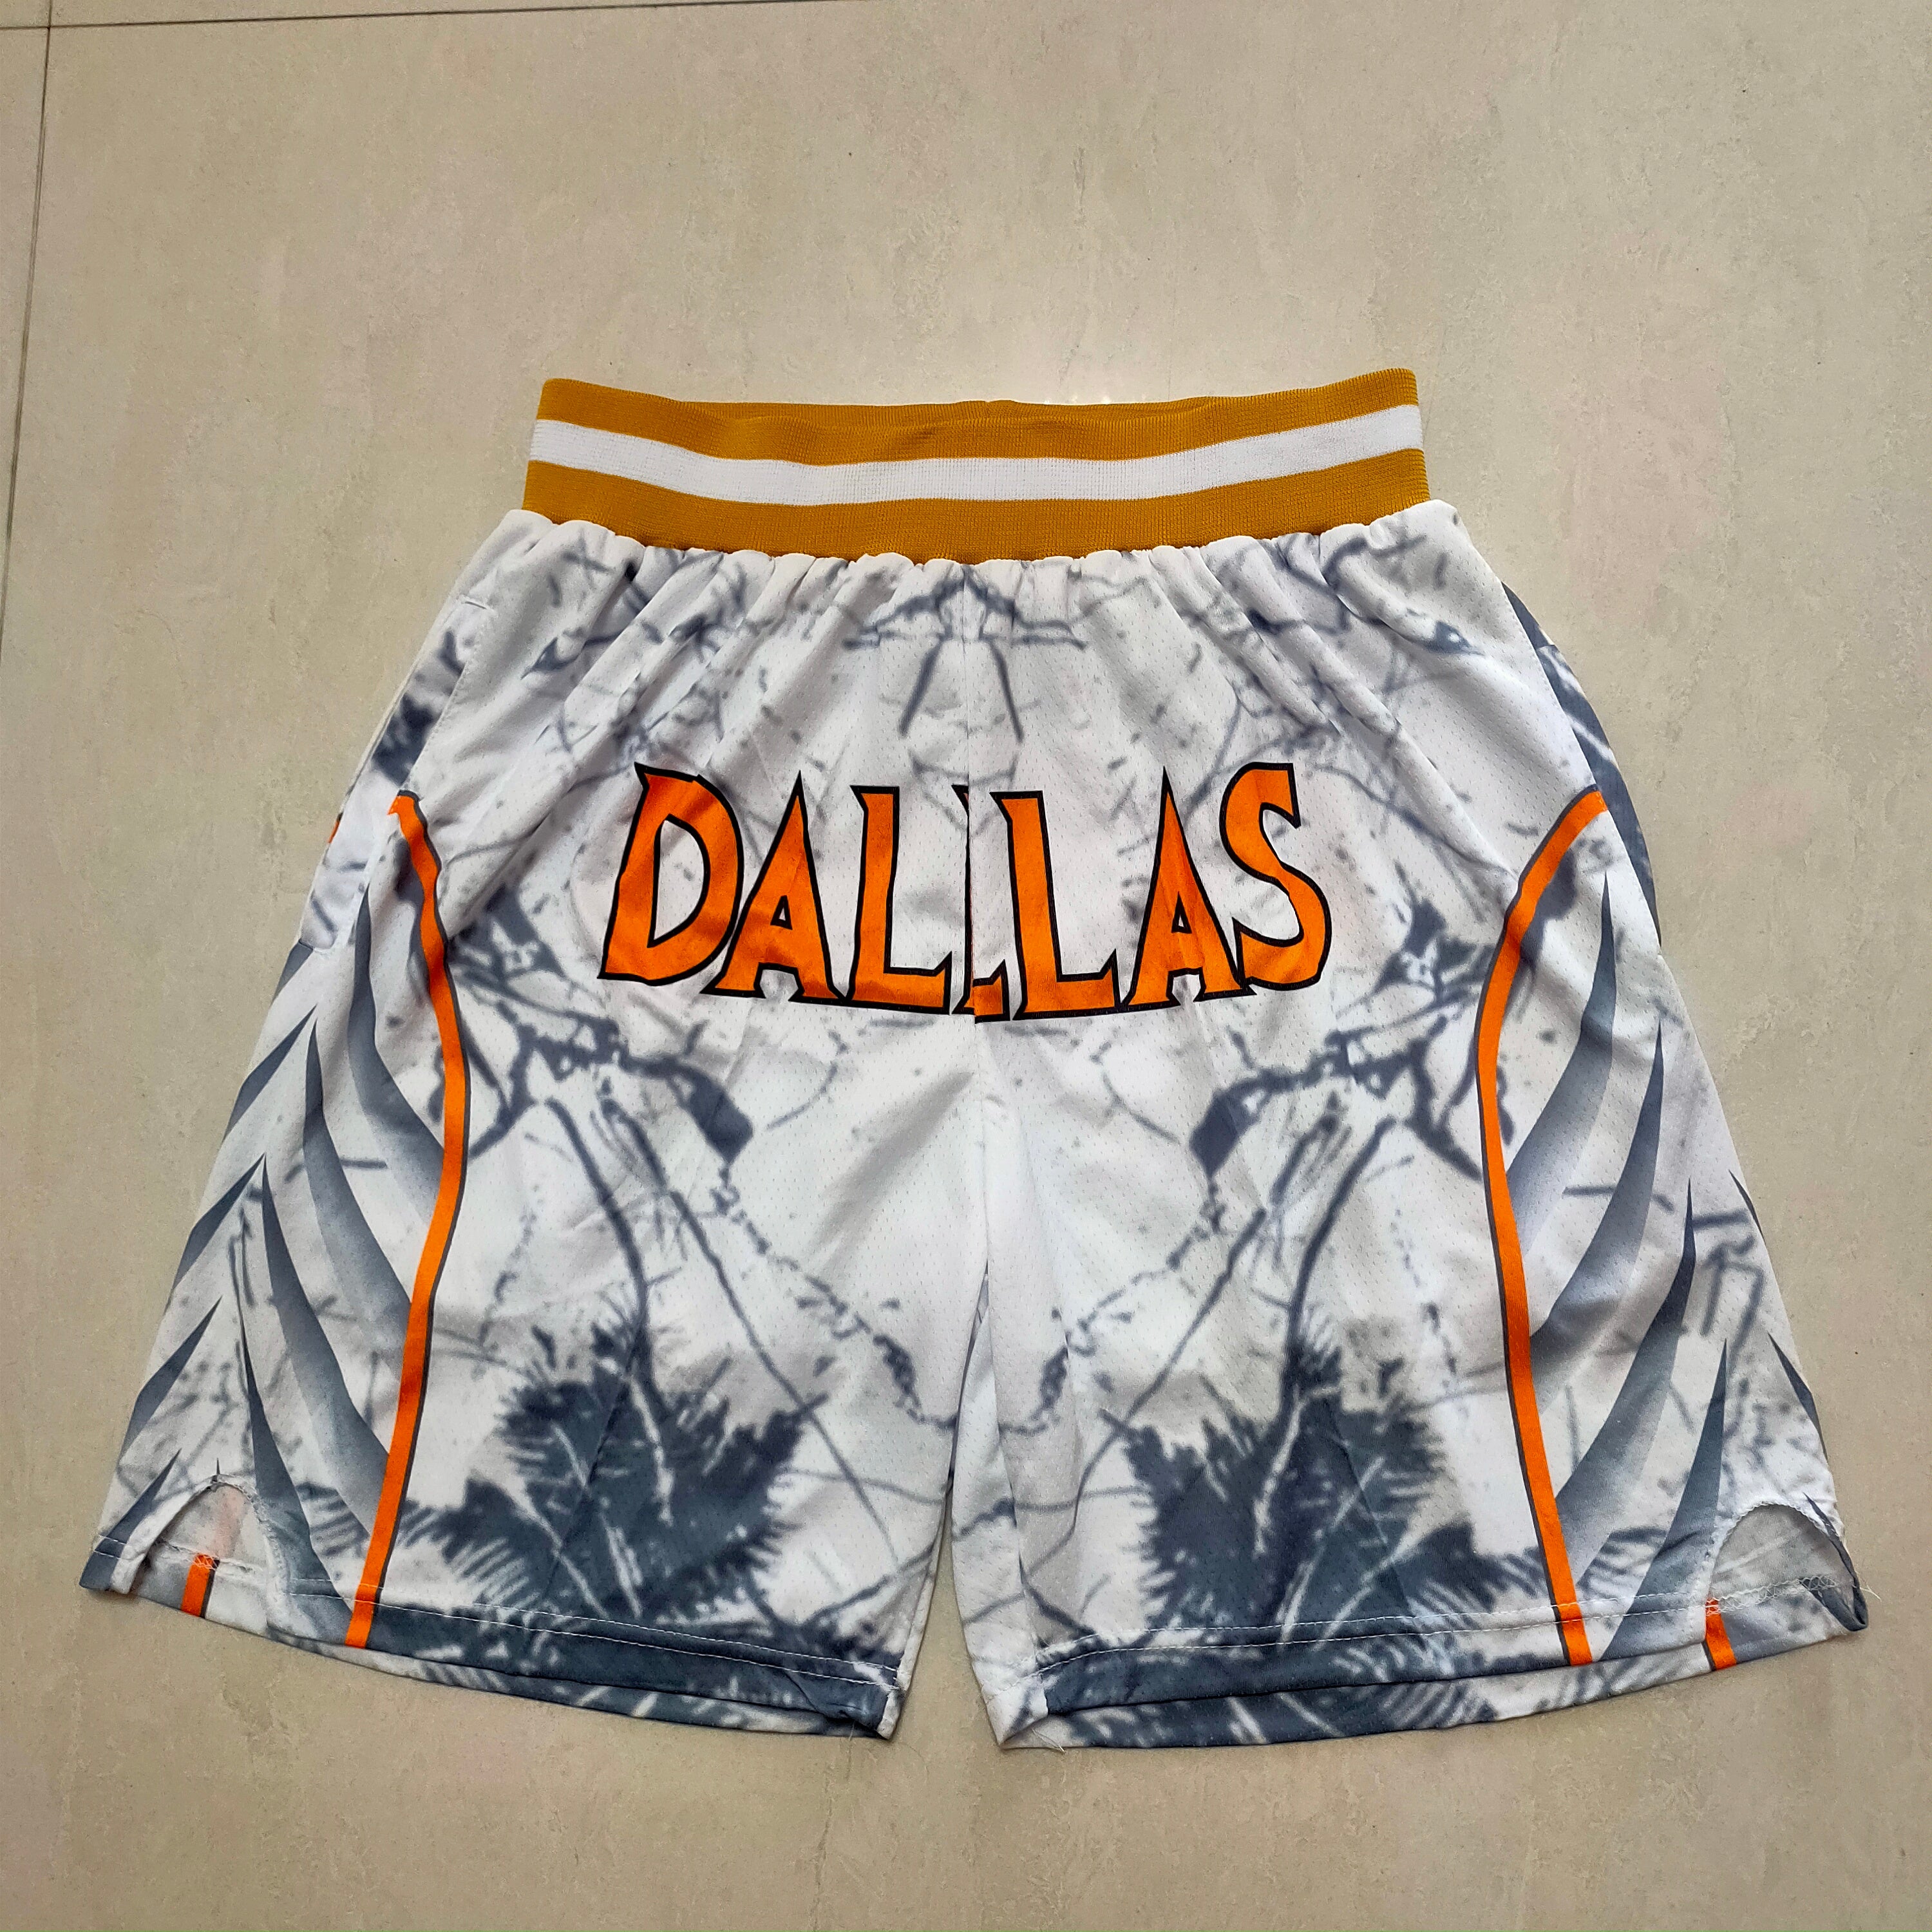 Dallas white and orange shorts